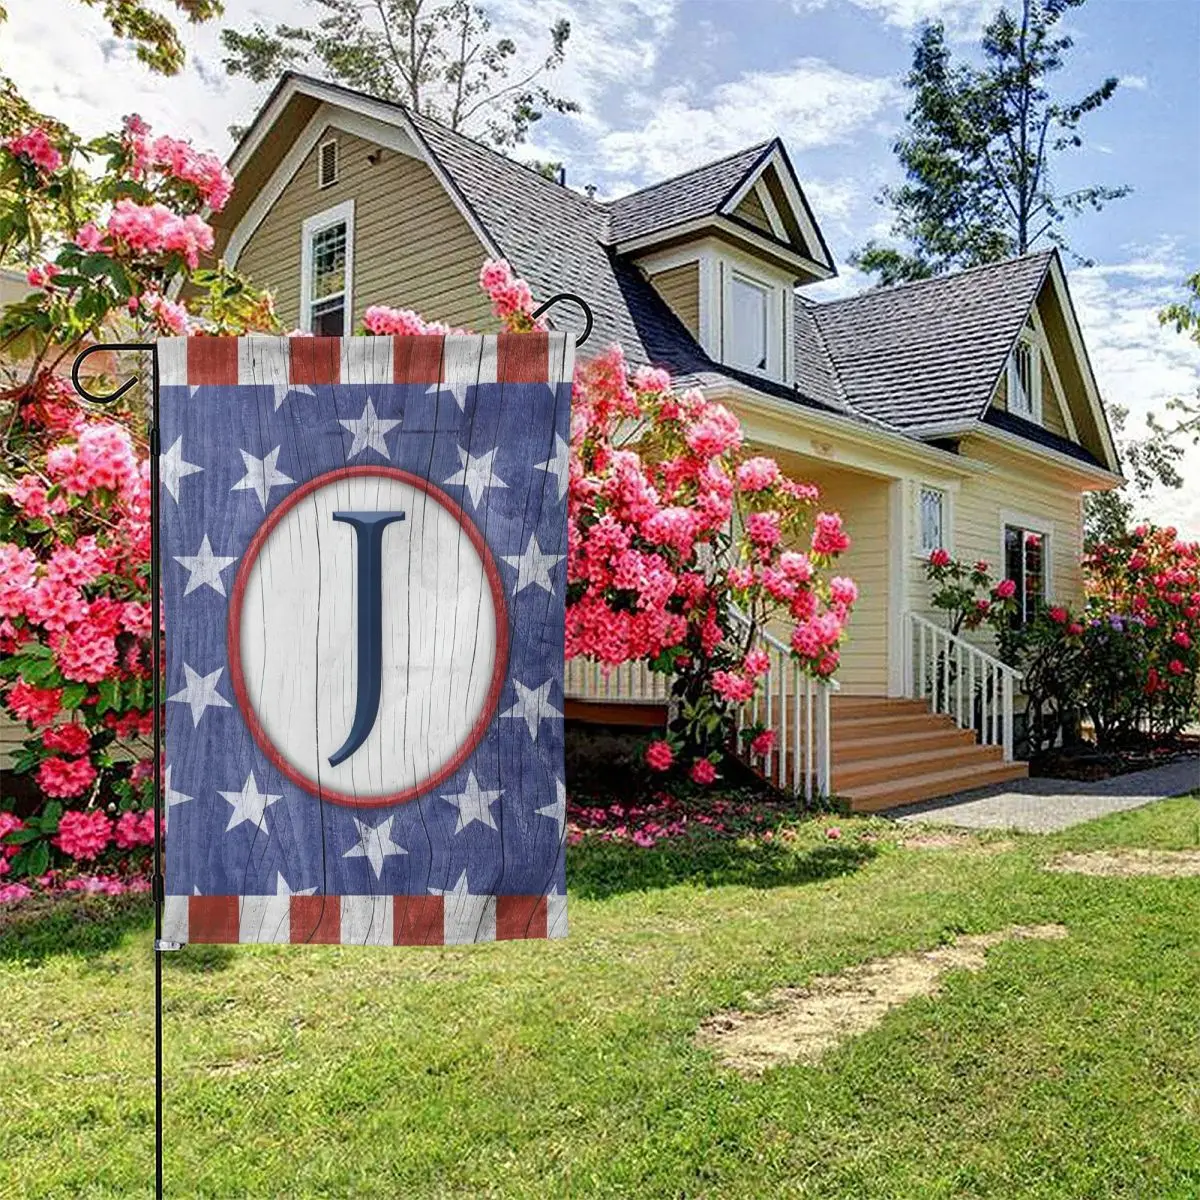 

Патриотическая монограмма «Америка навсегда» 4 июля, флаг для сада, буква «J», День независимости США, декоративный уличный двор, флаг США